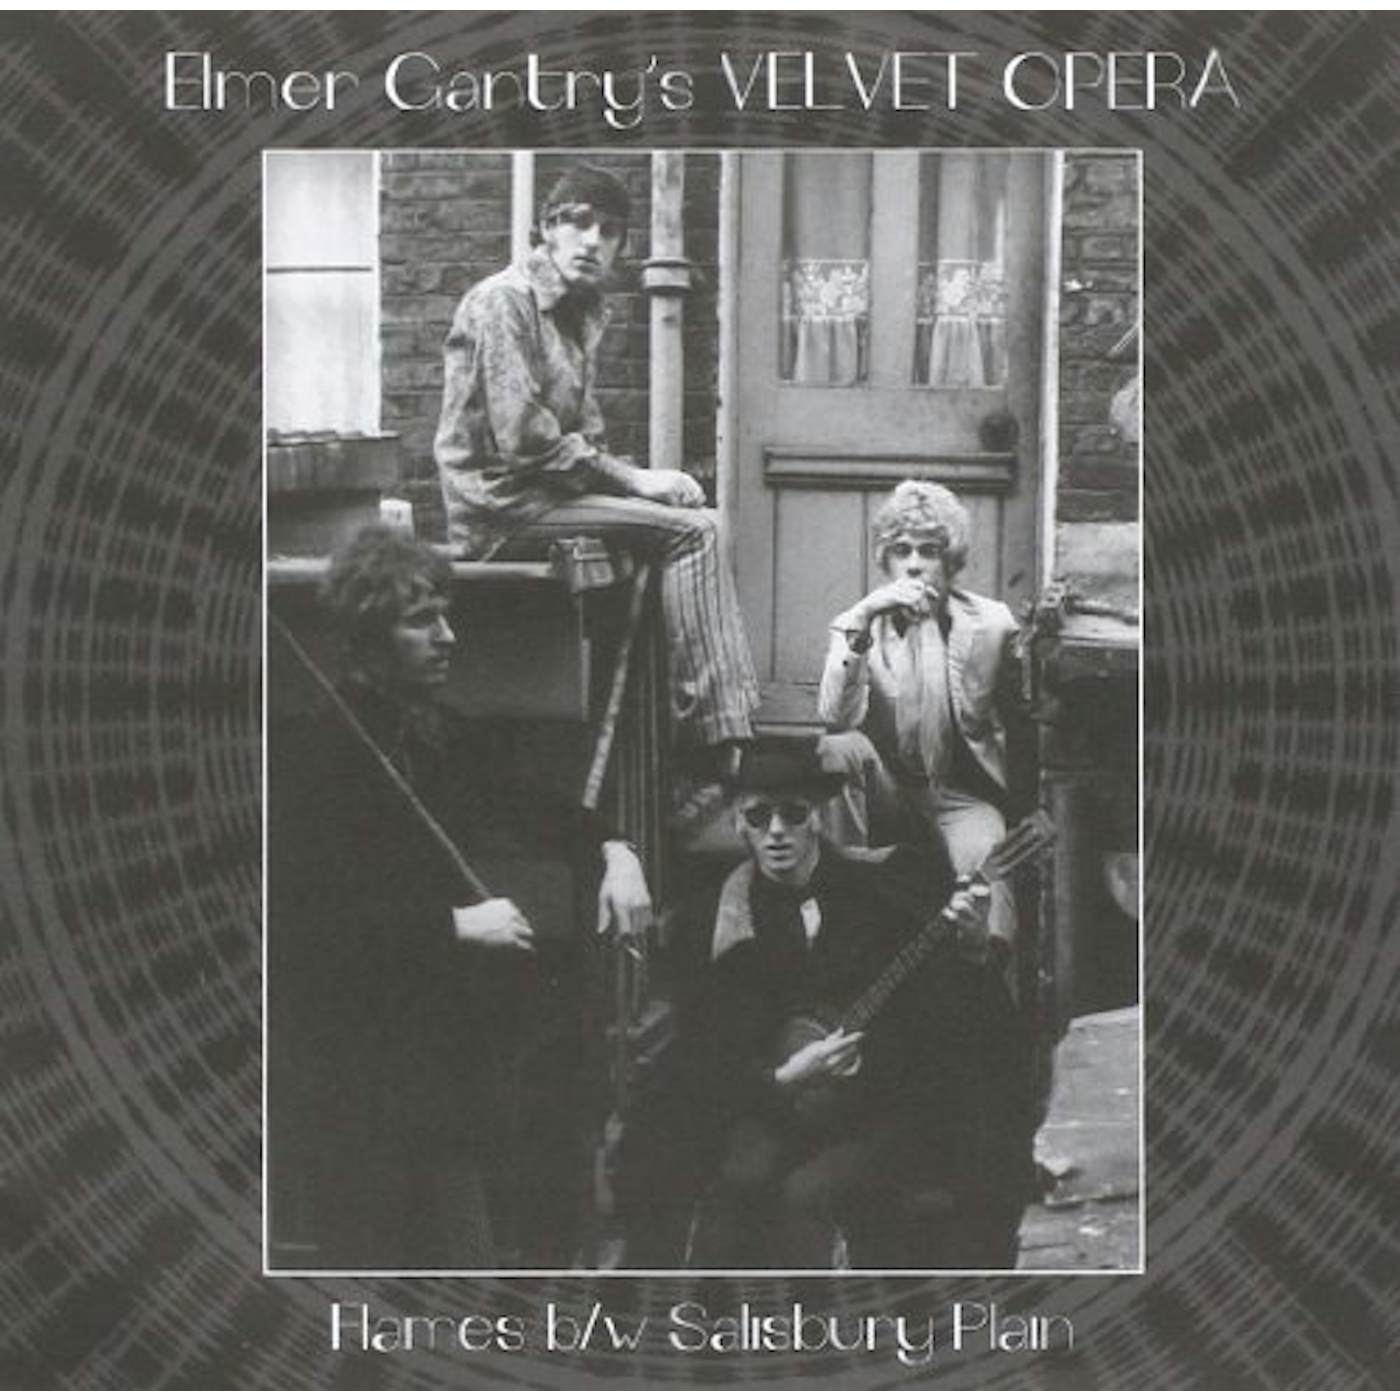 Elmer Gantry's Velvet Opera 7-FLAMES Vinyl Record